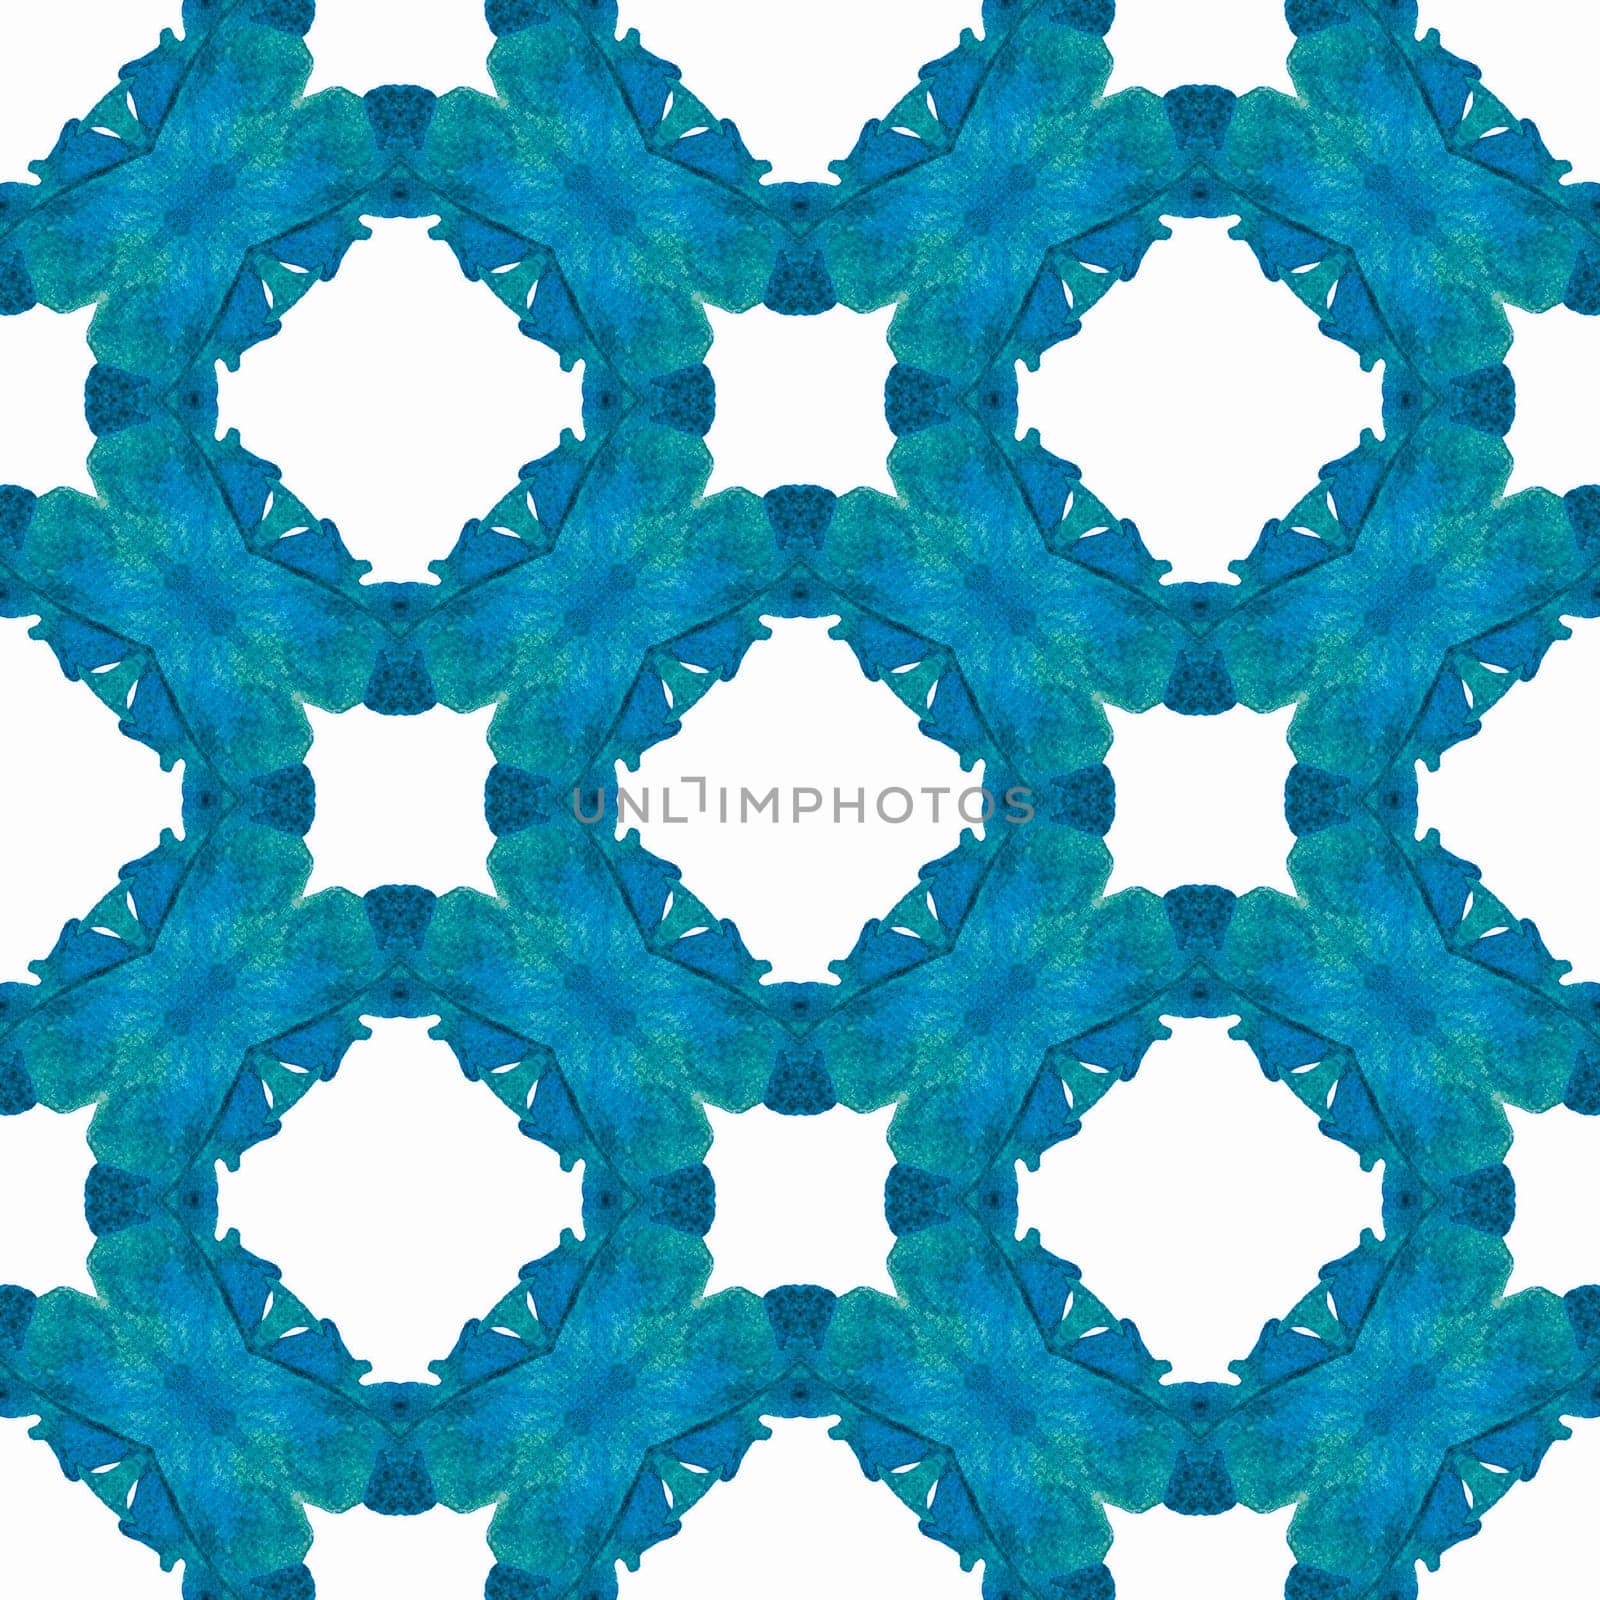 Textile ready magnificent print, swimwear fabric, wallpaper, wrapping. Blue imaginative boho chic summer design. Green geometric chevron watercolor border. Chevron watercolor pattern.